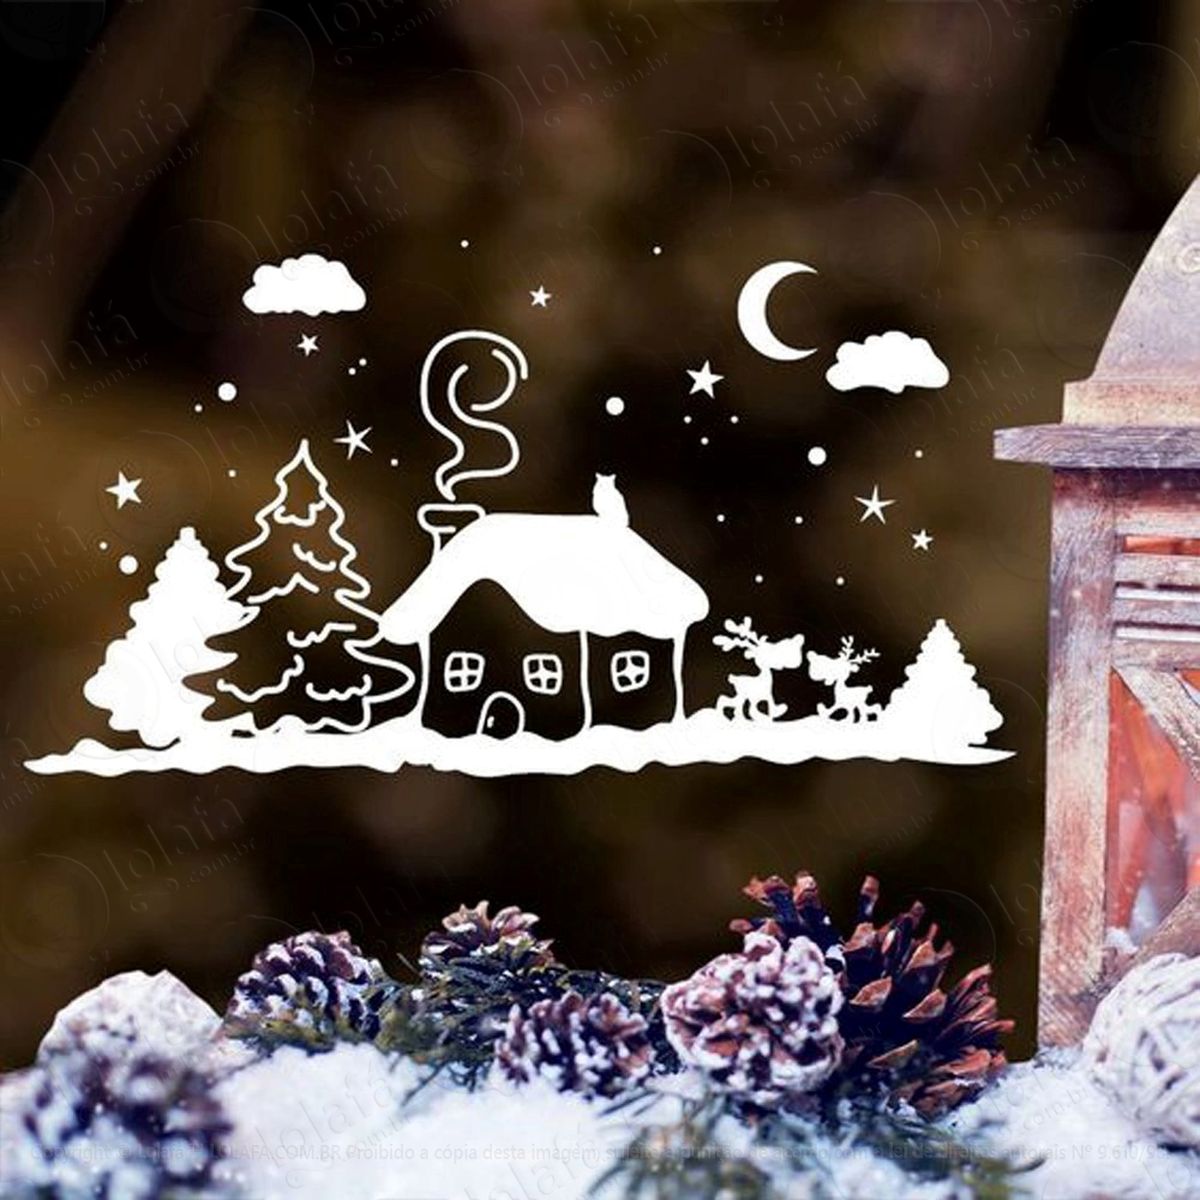 casinha de neve adesivo de natal para vitrine, parede, porta de vidro - decoração natalina mod:276